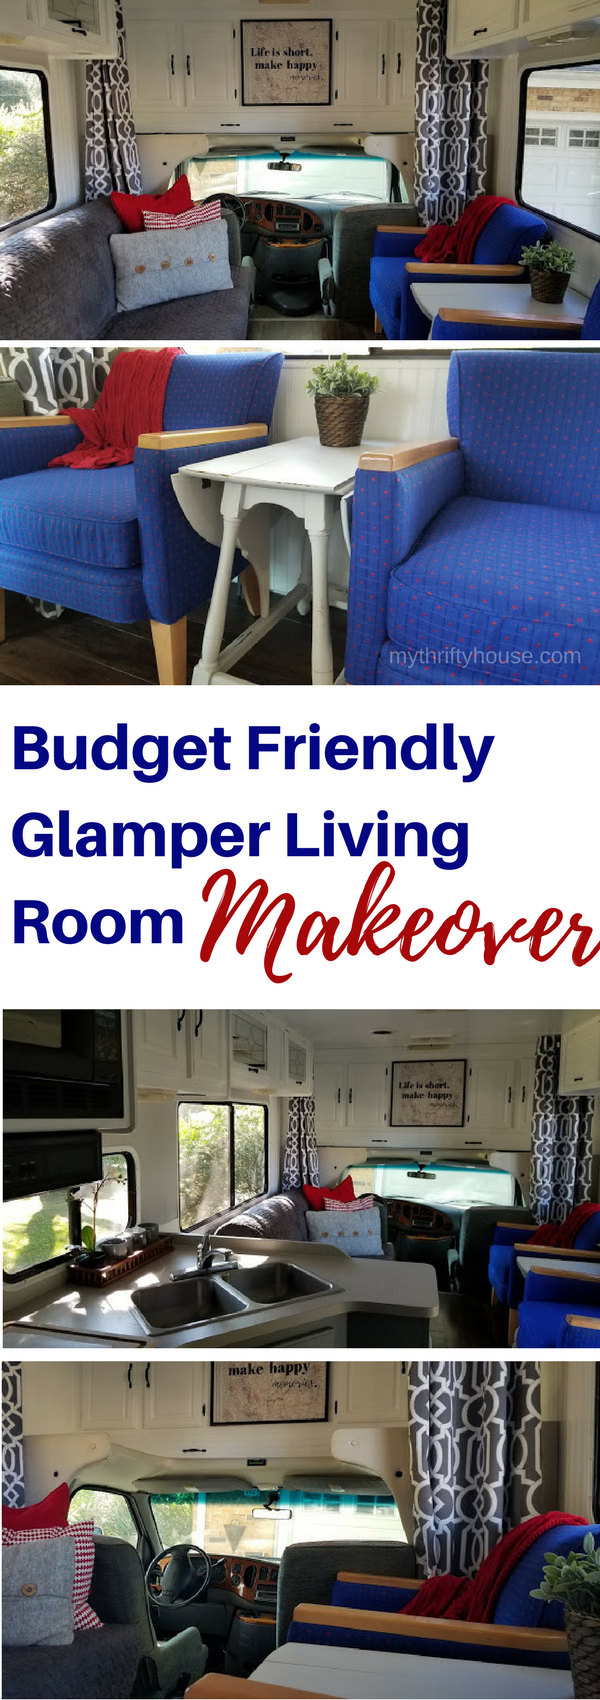 Budget Friendly Glamper Living Room Makeover